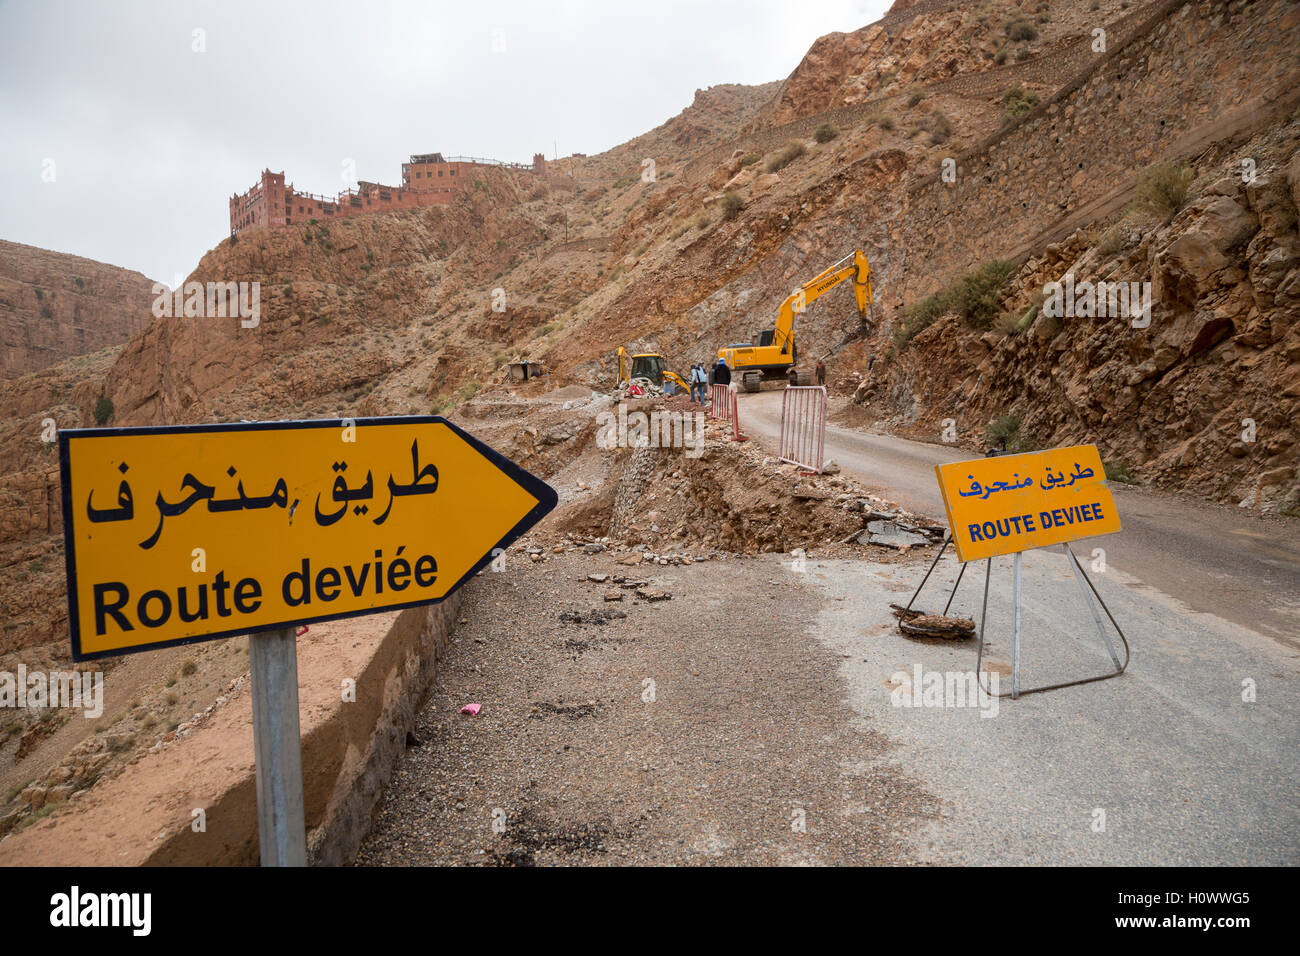 Les gorges du Dadès, au Maroc. La réparation s'effondre Partie de l'escalade de la route jusqu'à la sortie de la gorge. Hôtel Timzzillite au top. Banque D'Images